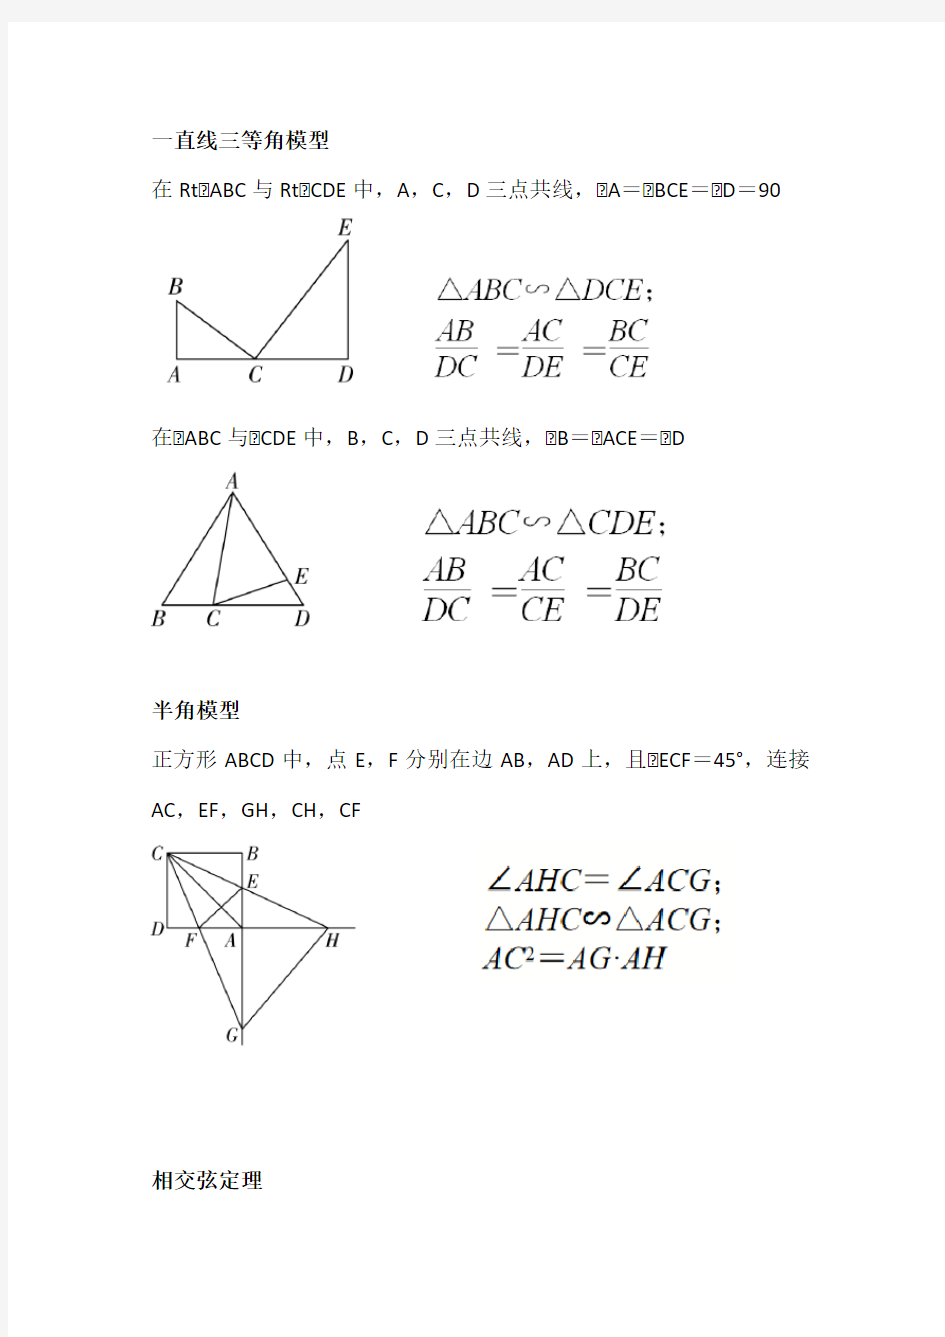 相似三角形的几种模型